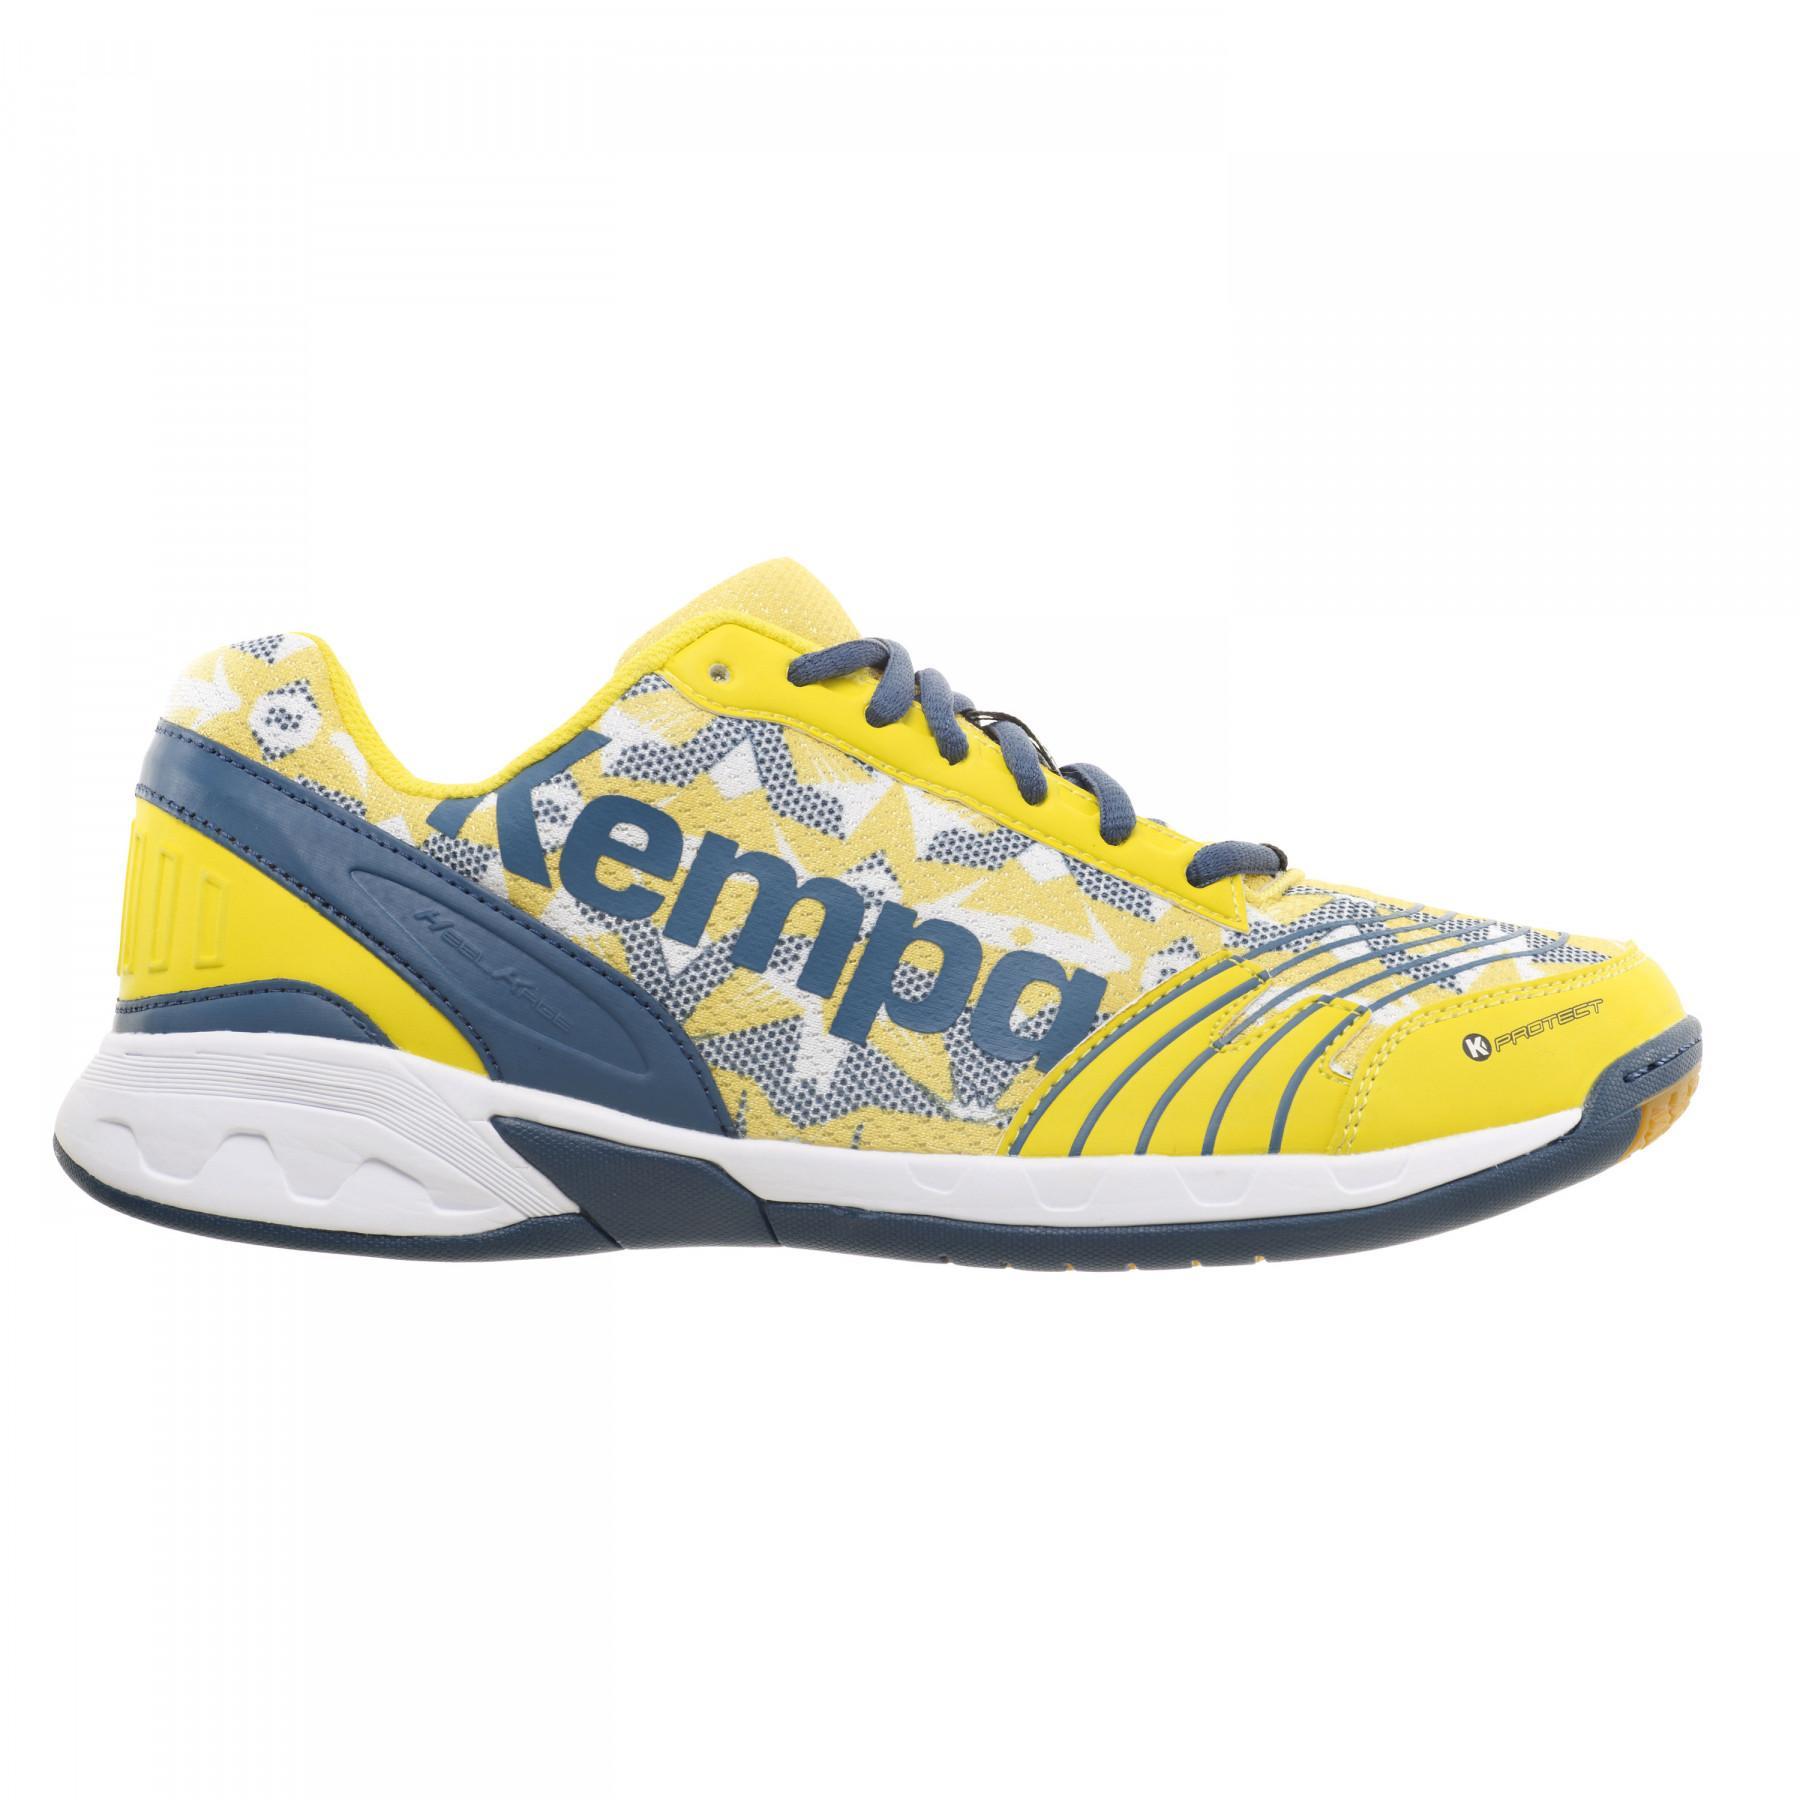 Chaussures Kempa Attack Three bleu roi/blanc/jaune